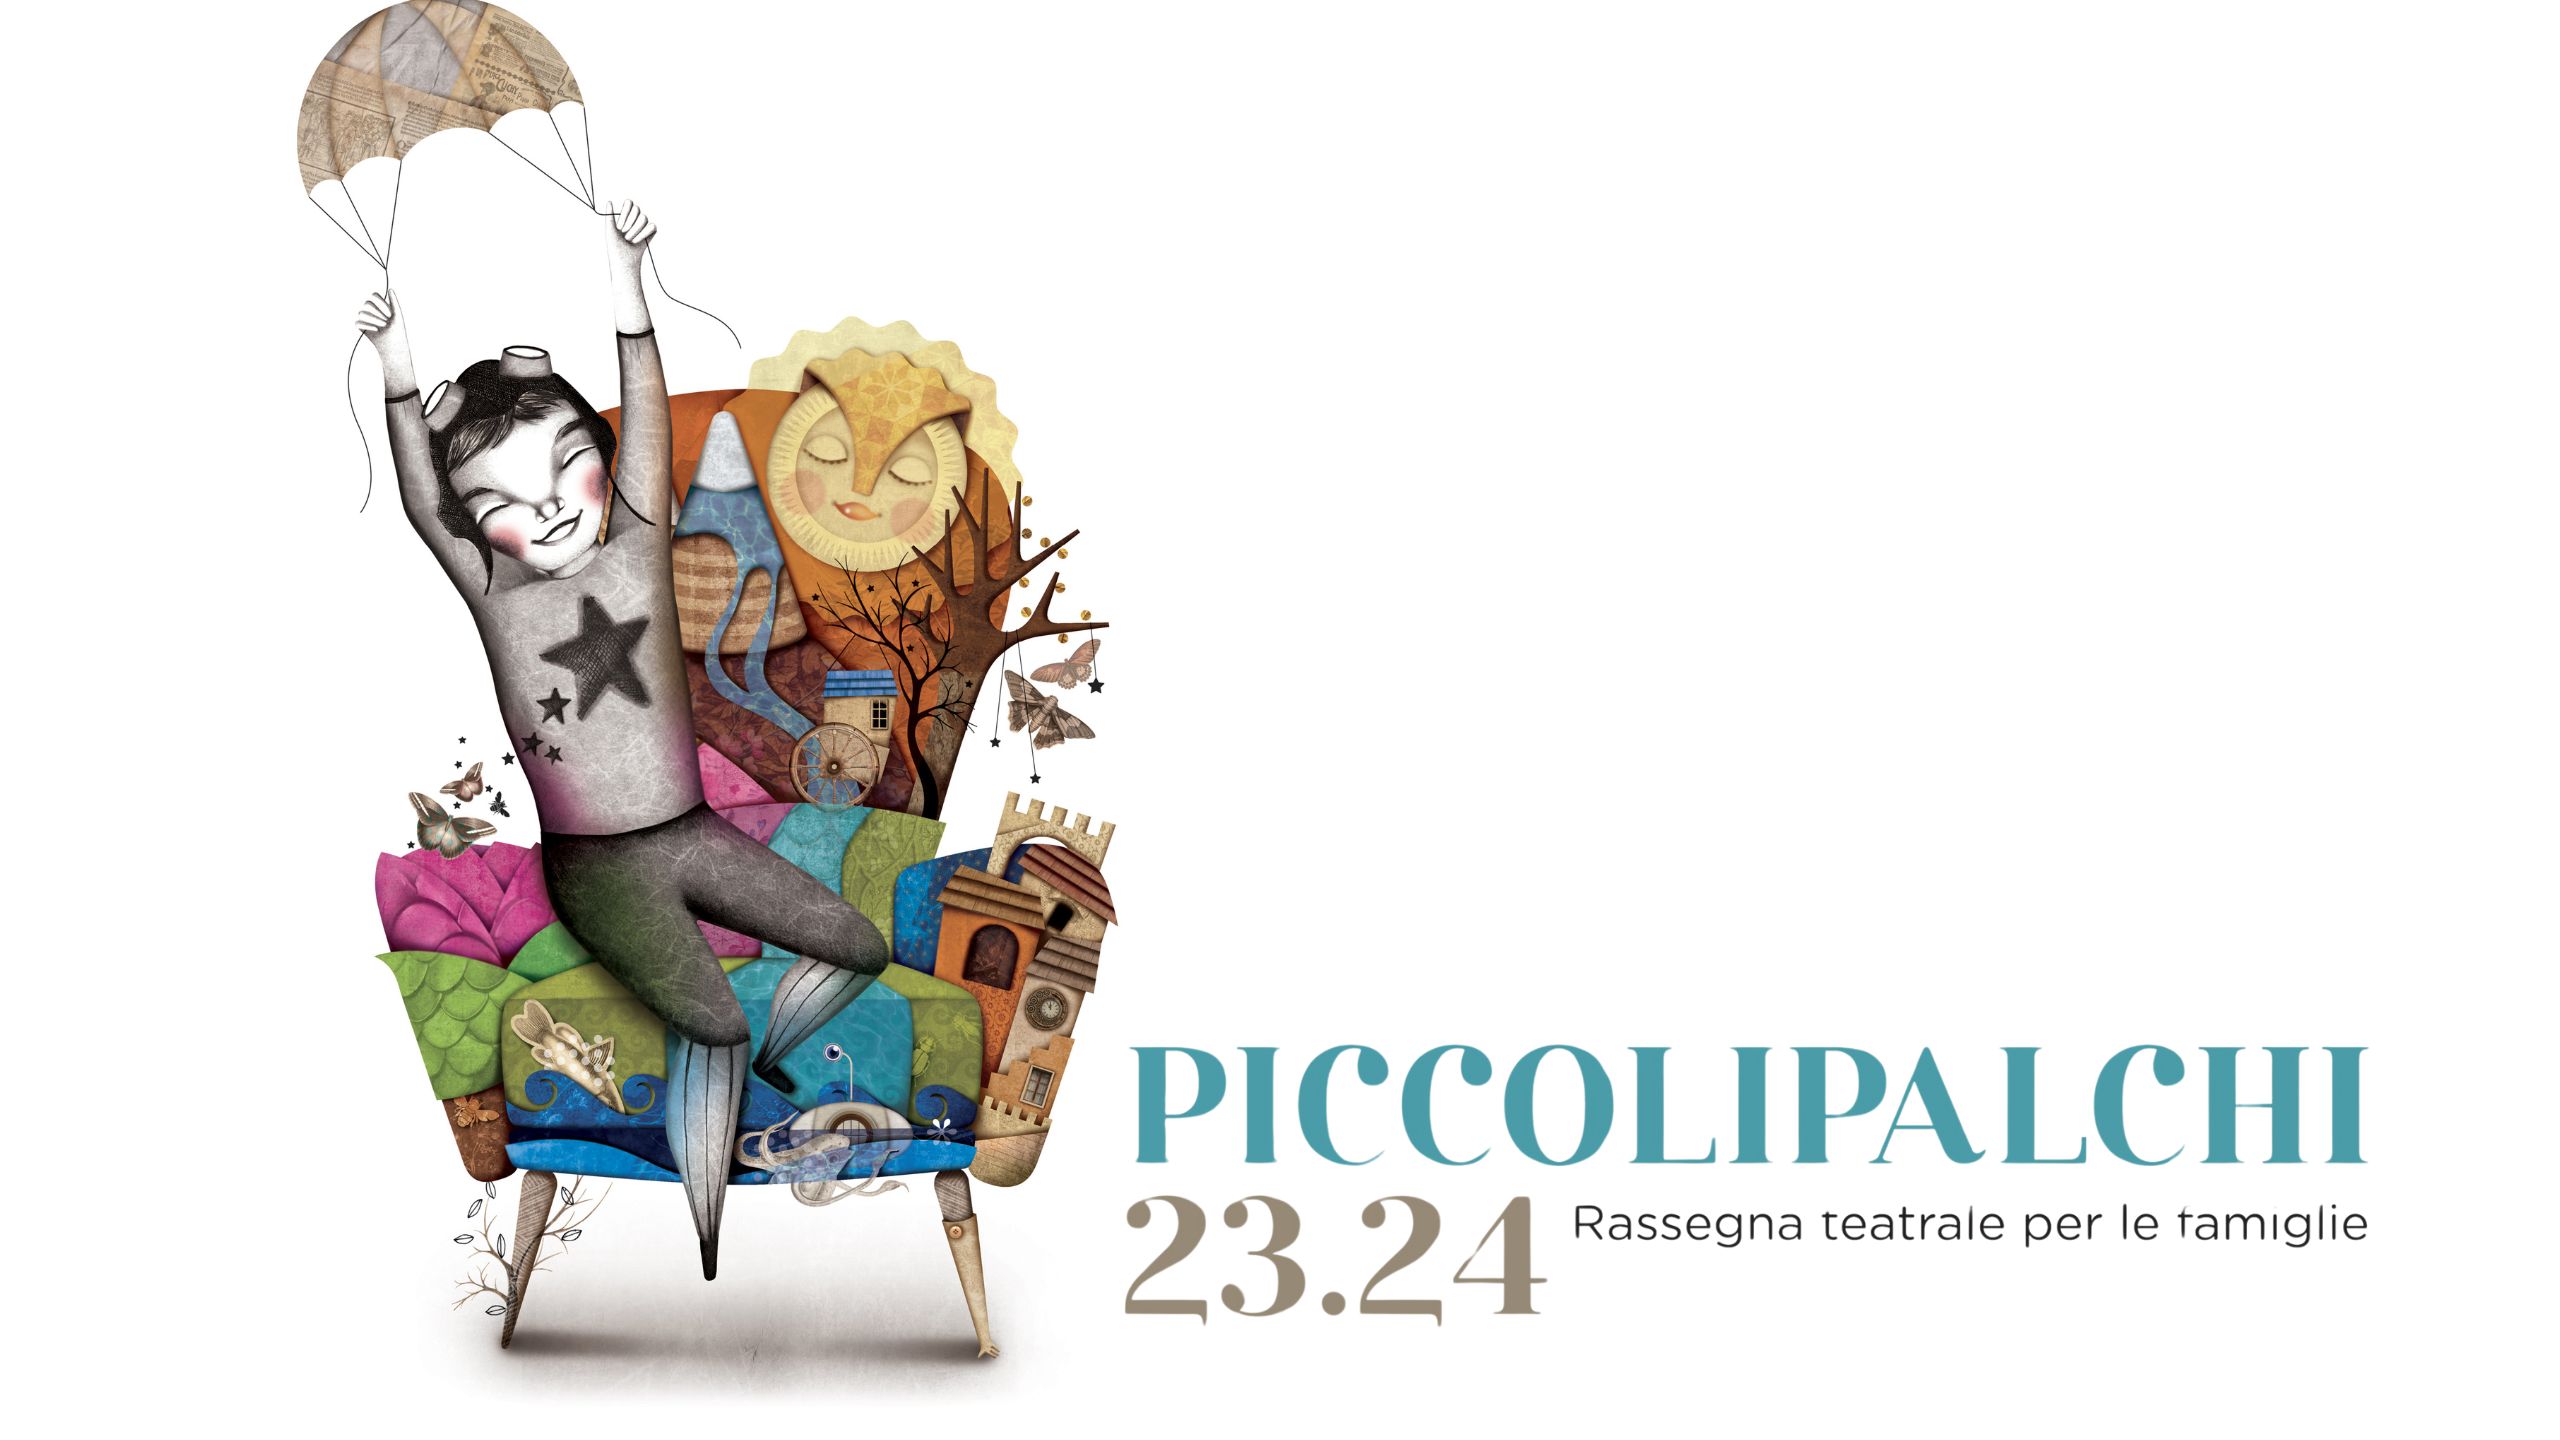 Piccolipalchi 23.24